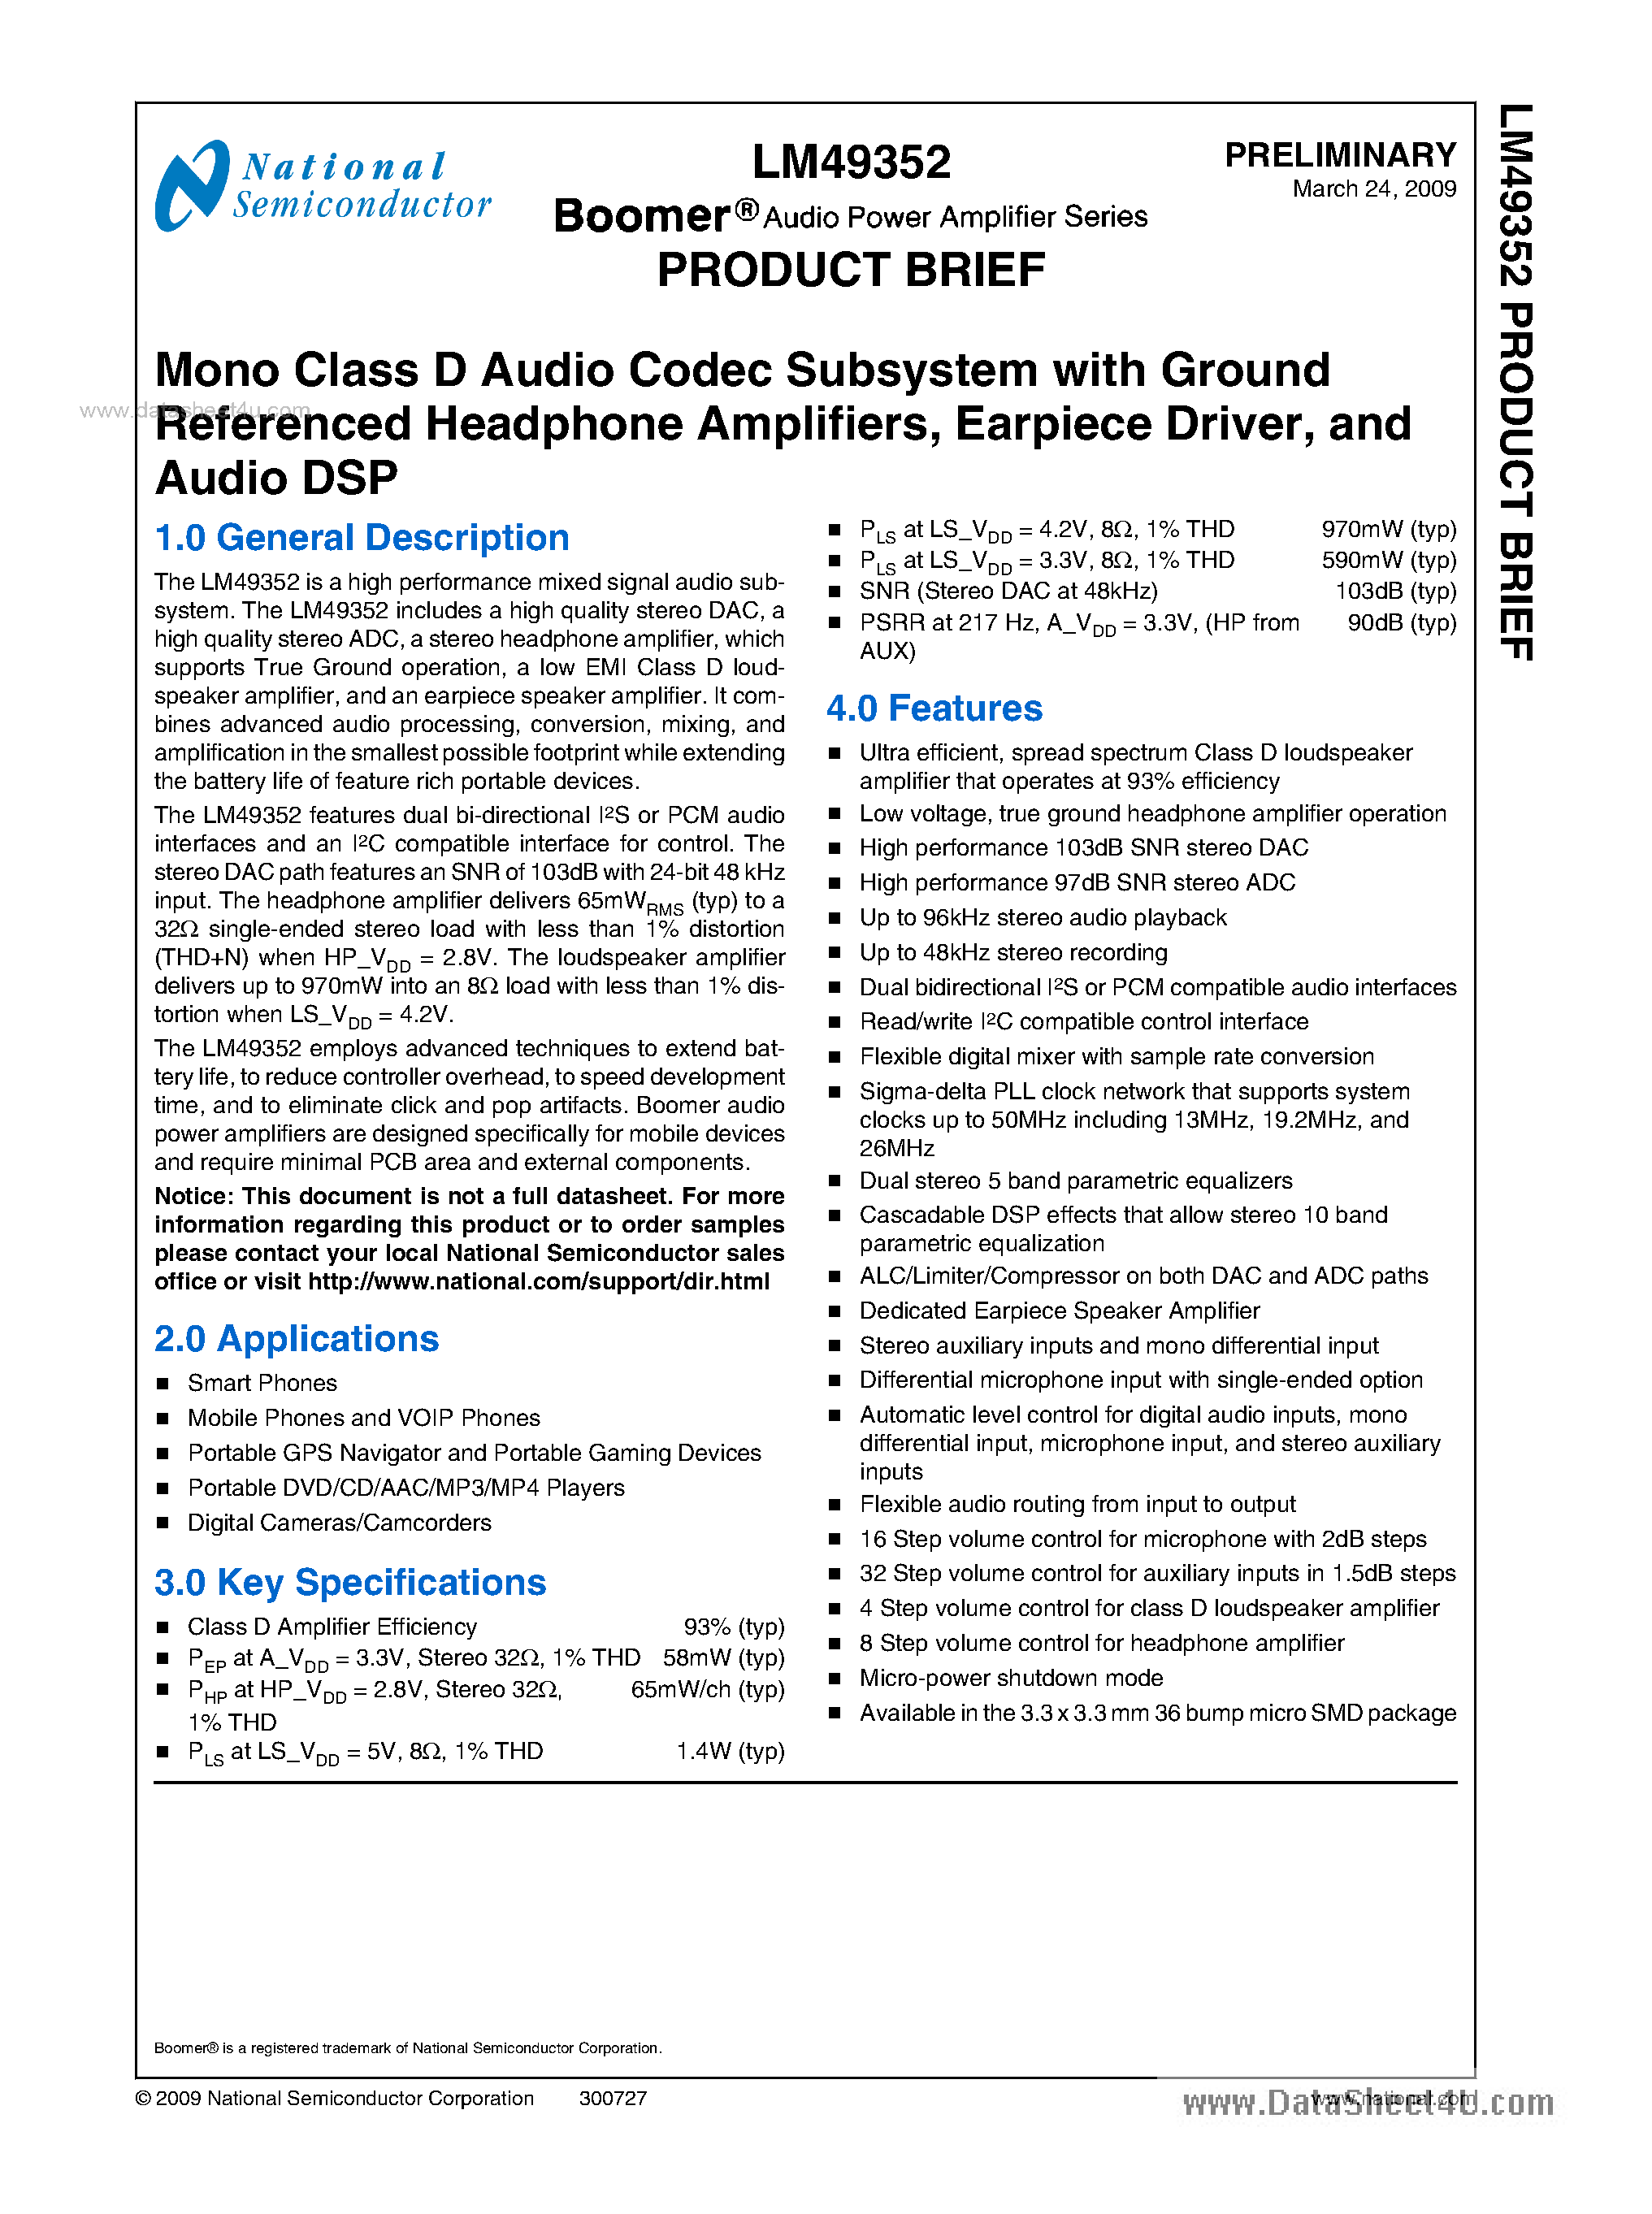 Даташит LM49352 - Mono Class D Audio Codec Subsytem страница 1